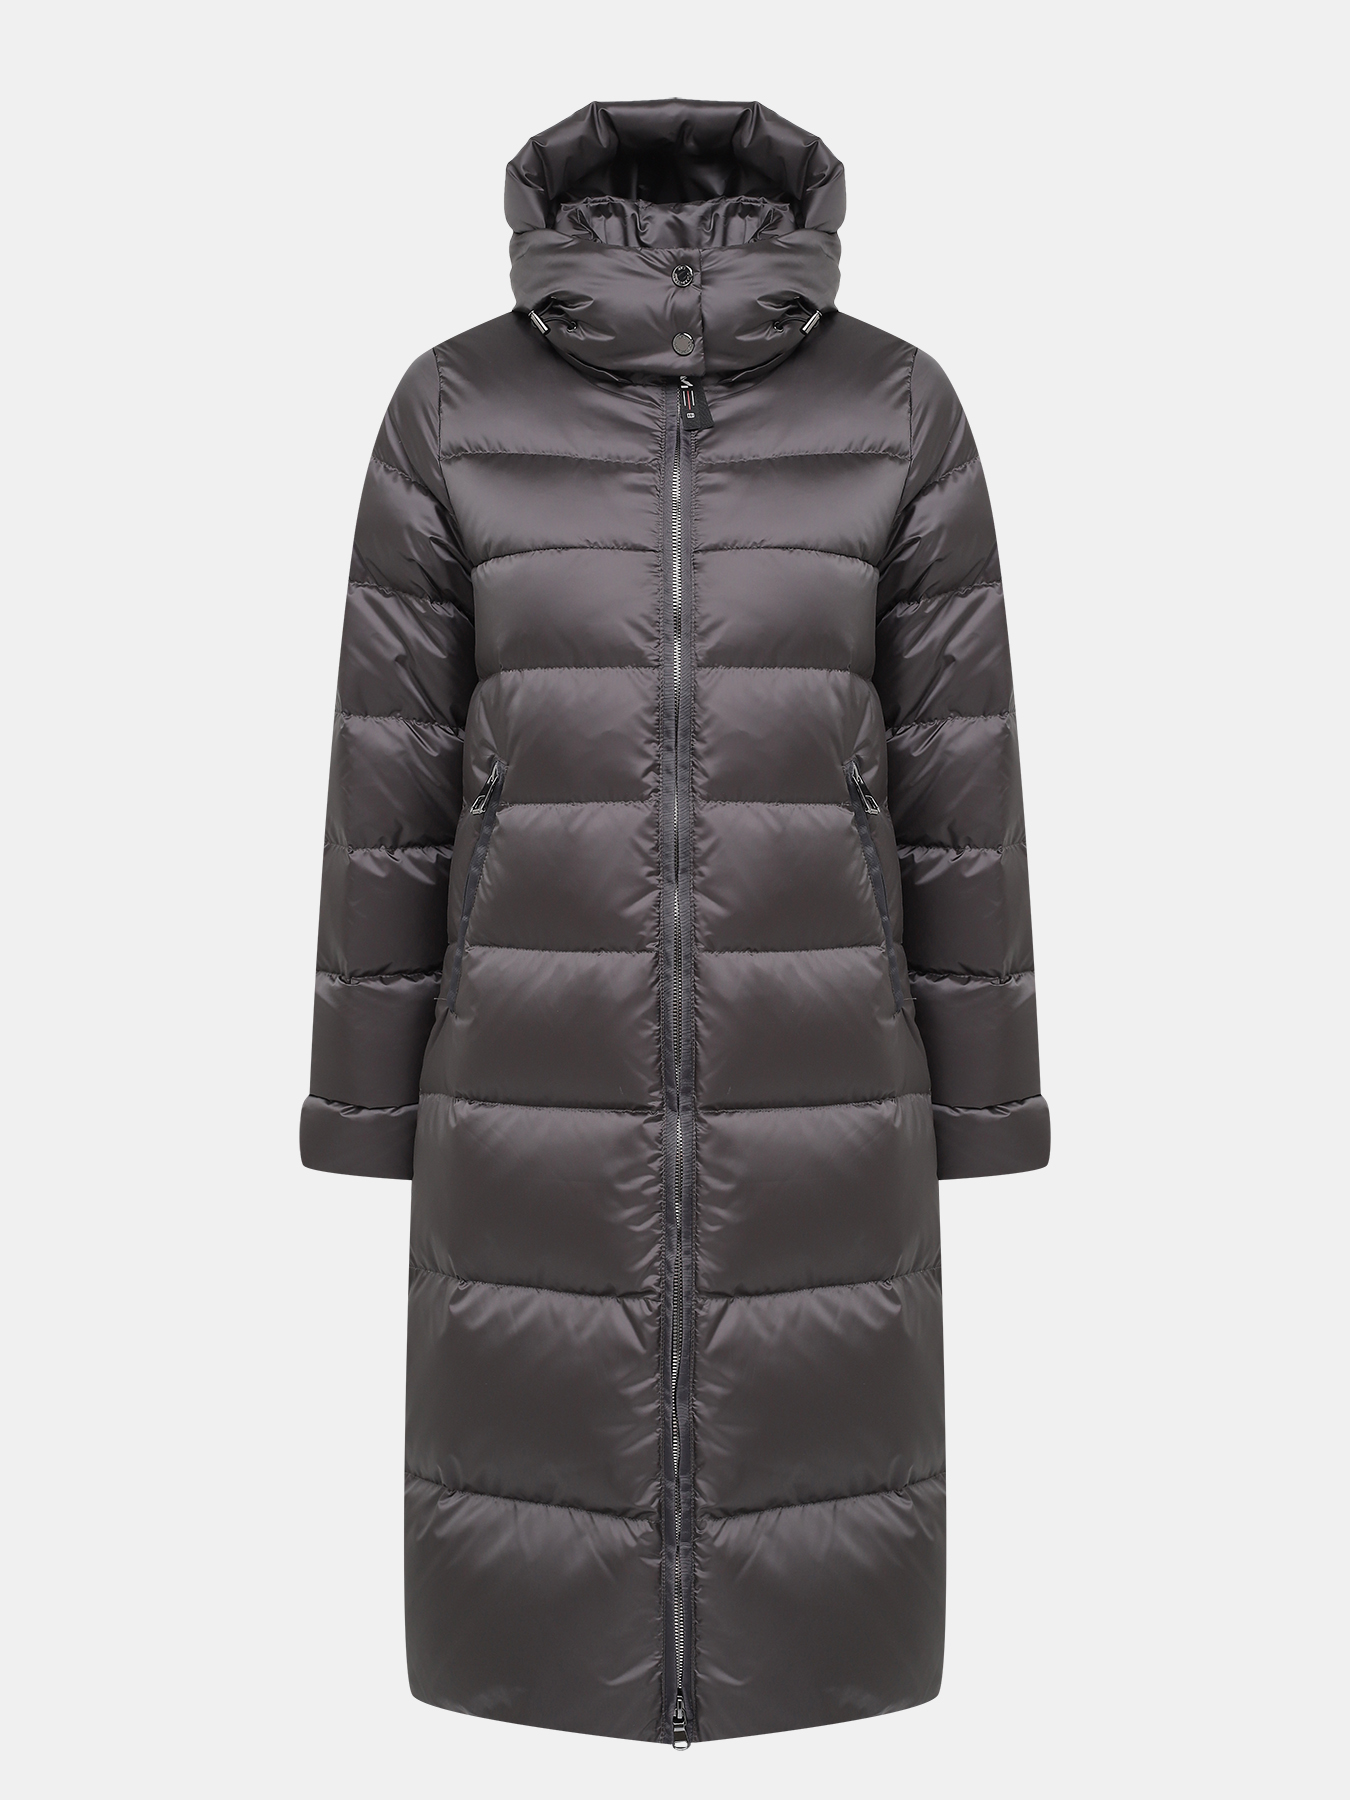 Пальто зимнее AVI 433634-027, цвет серый, размер 52